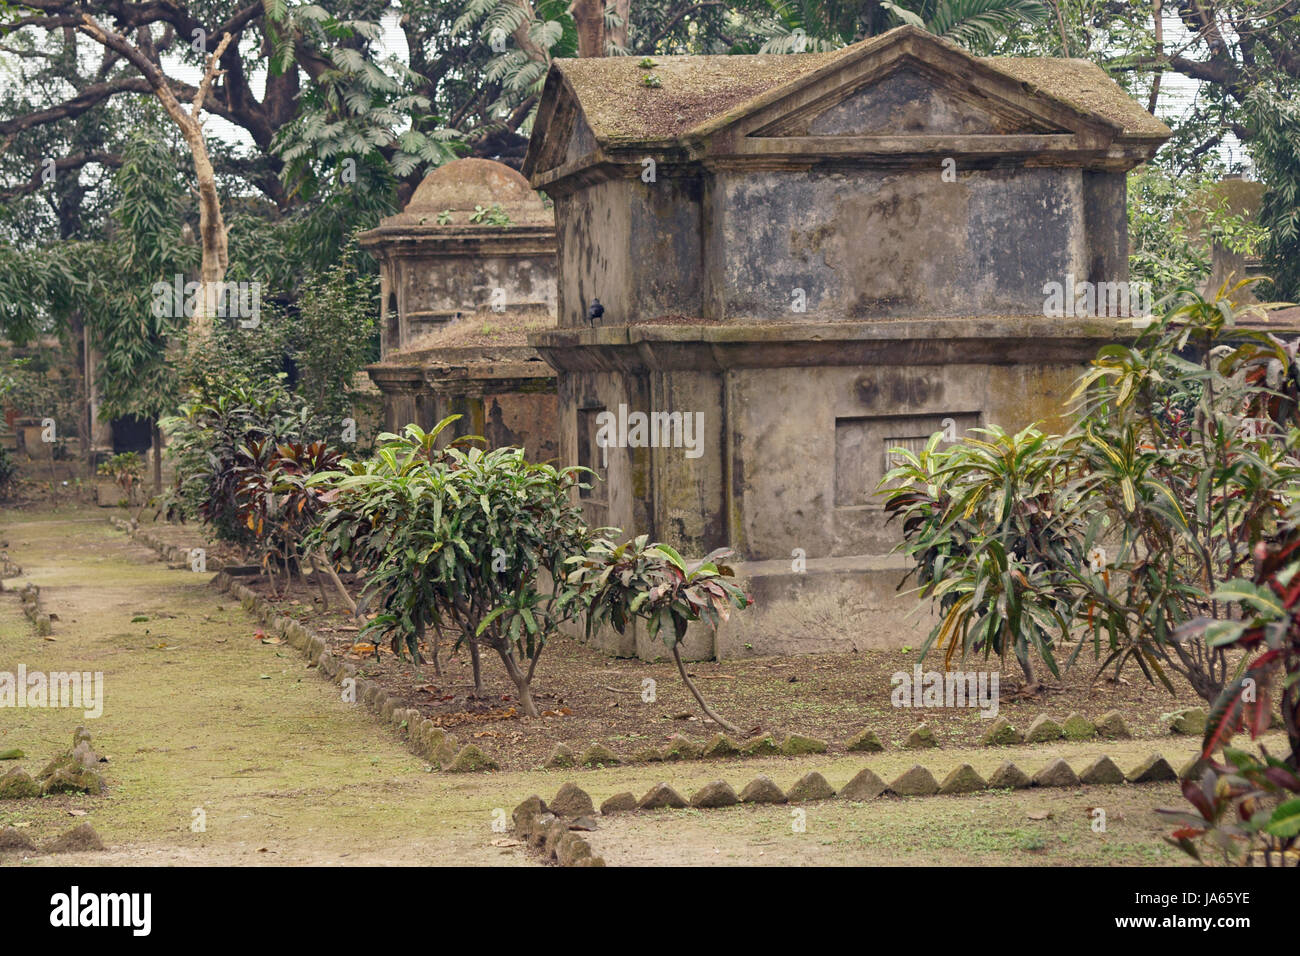 Alter Friedhof mit den Überresten von den Europäern, die die Stadt Kalkutta im 17. und 18. Jahrhundert n. Chr. zu etablieren. Kolkata, Westbengalen, Indien. Stockfoto